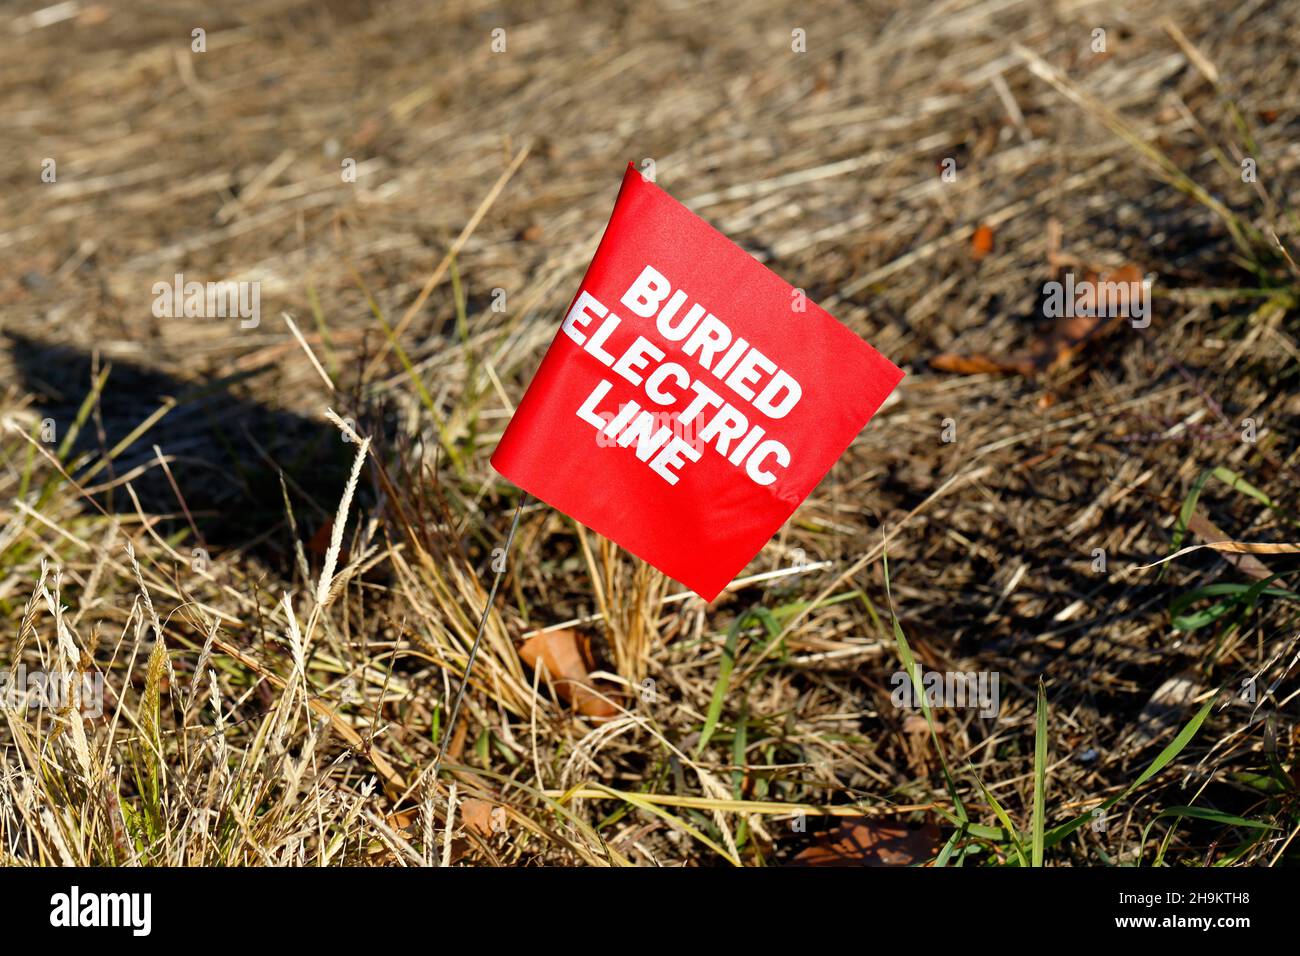 Eine Markierungsfahne für vergrabene elektrische Leitungen im Gras, die den Standort einer vergrabenen unterirdischen elektrischen Versorgungsleitung markiert Stockfoto